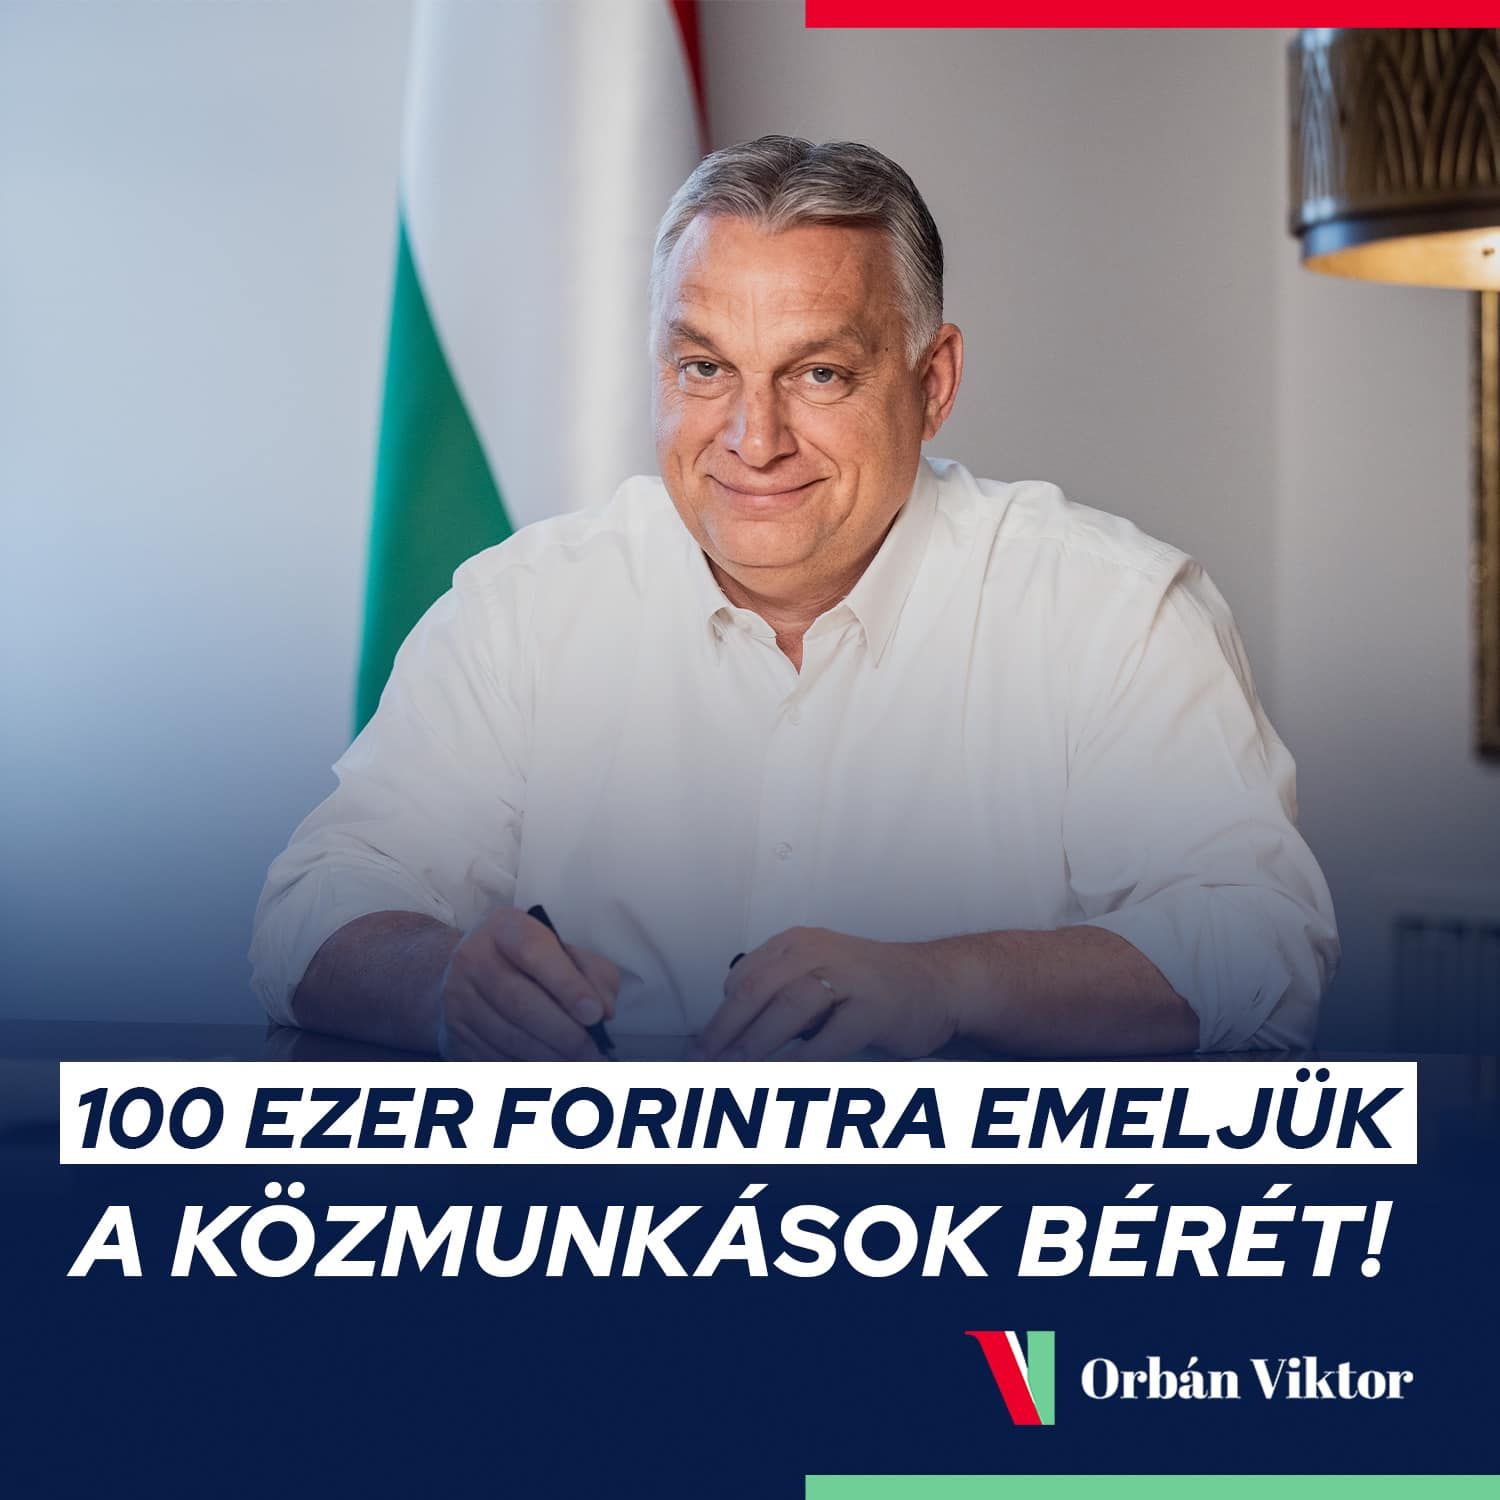 "Szánalmas, te nyomorult" – Orbán Viktor mosolyogva jelentette be a közmunkás-béremelést, elszabadultak az indulatok